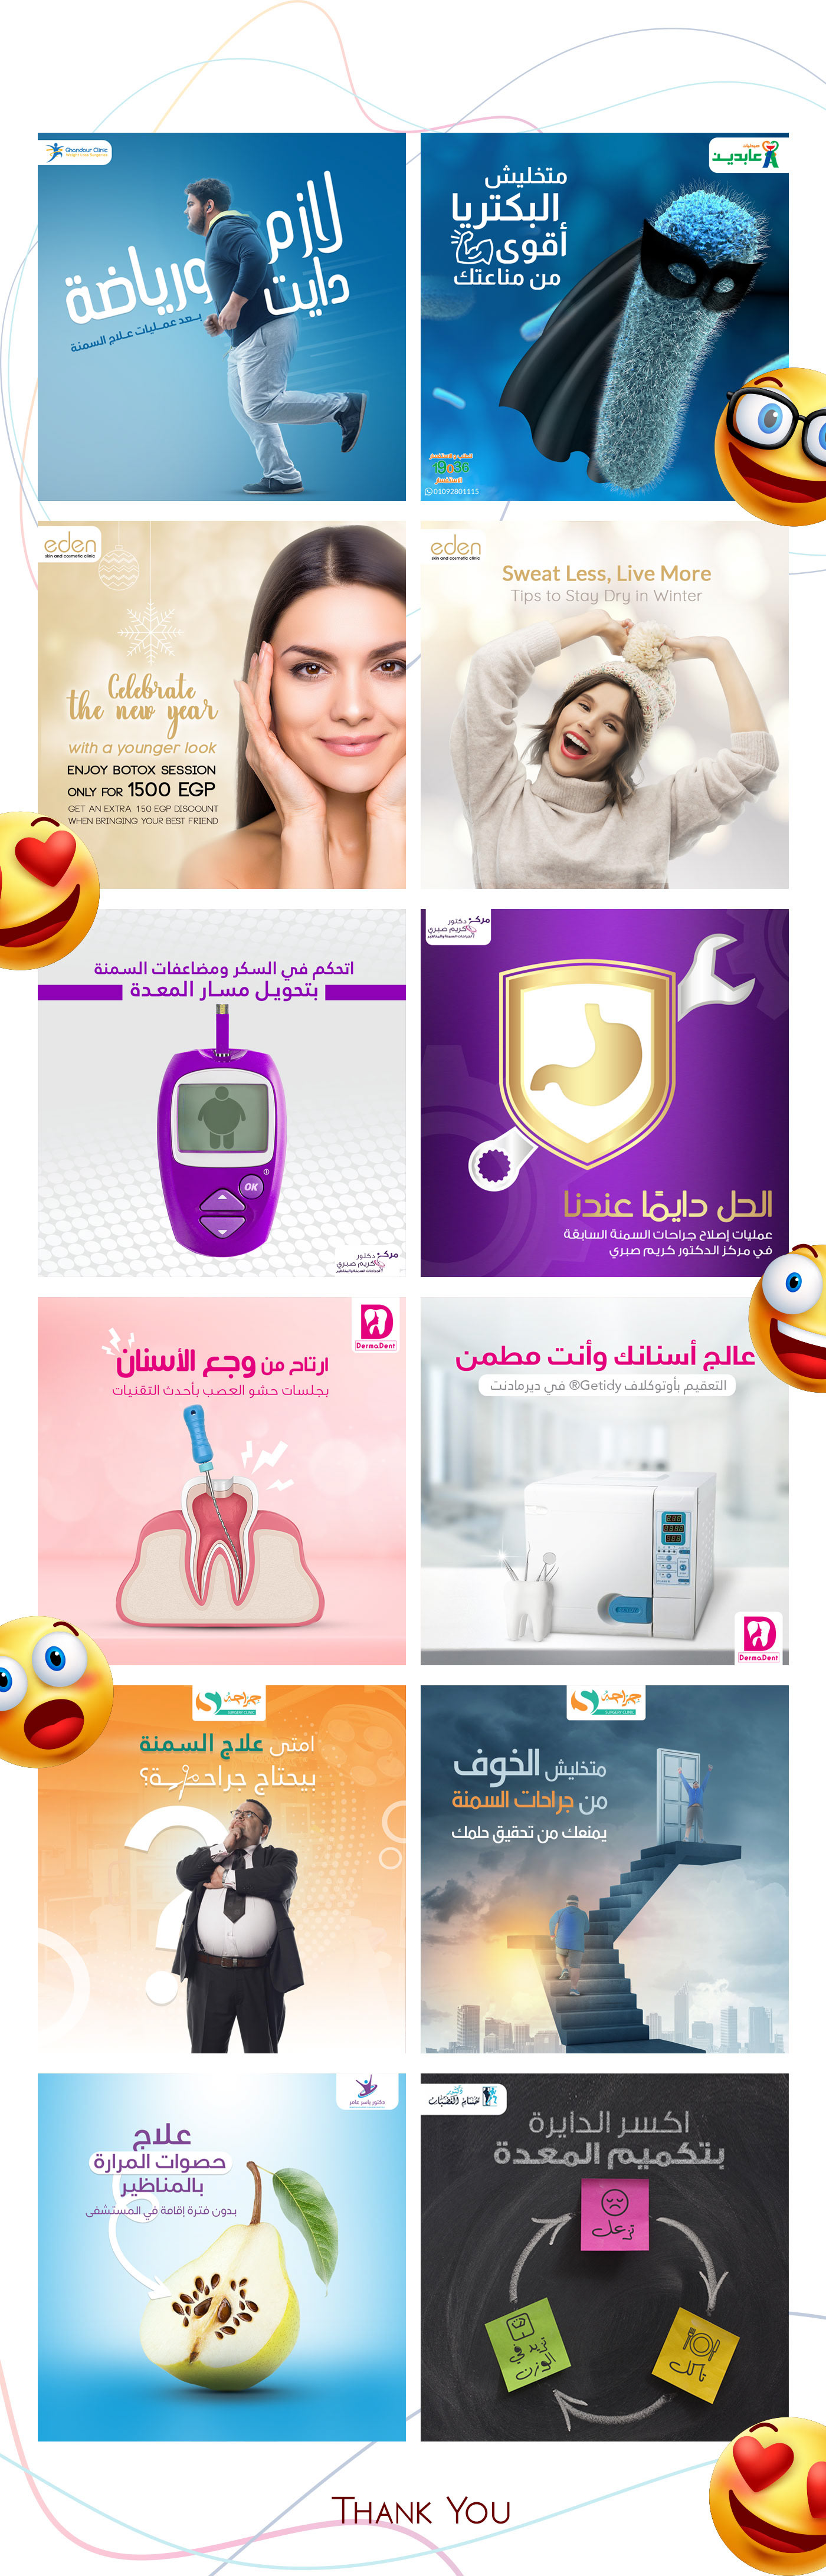 medial social media Advertising  dentist doctor